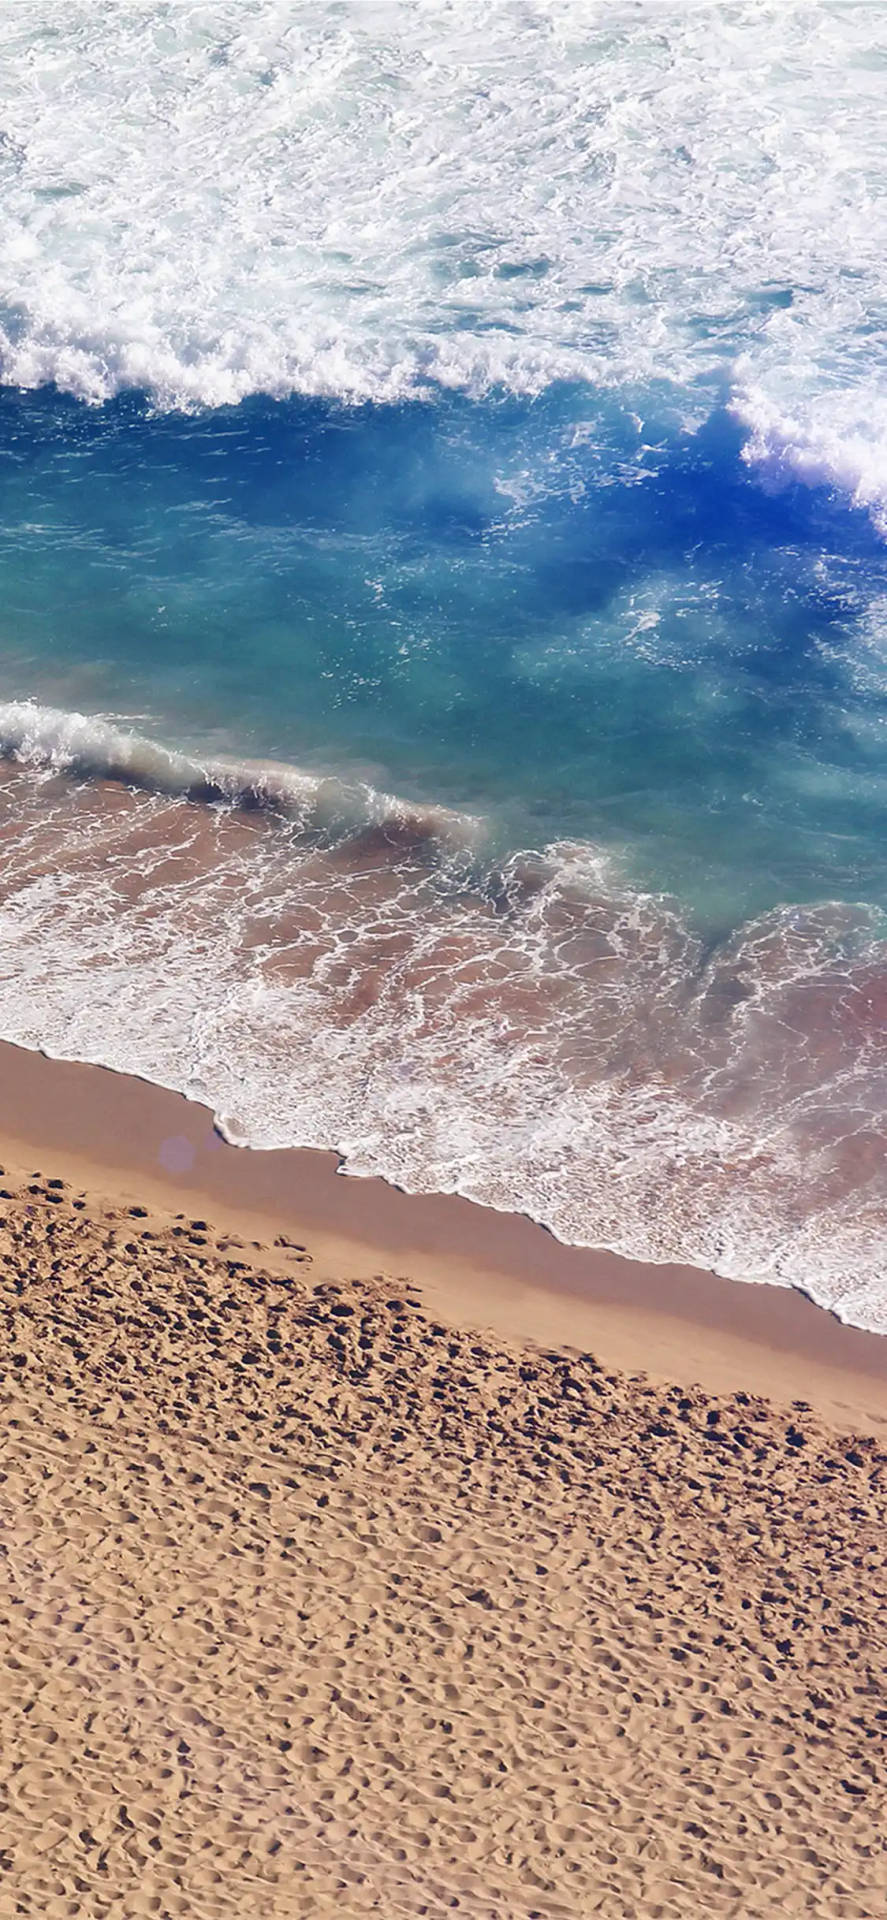 Iphone X Beach White Sands